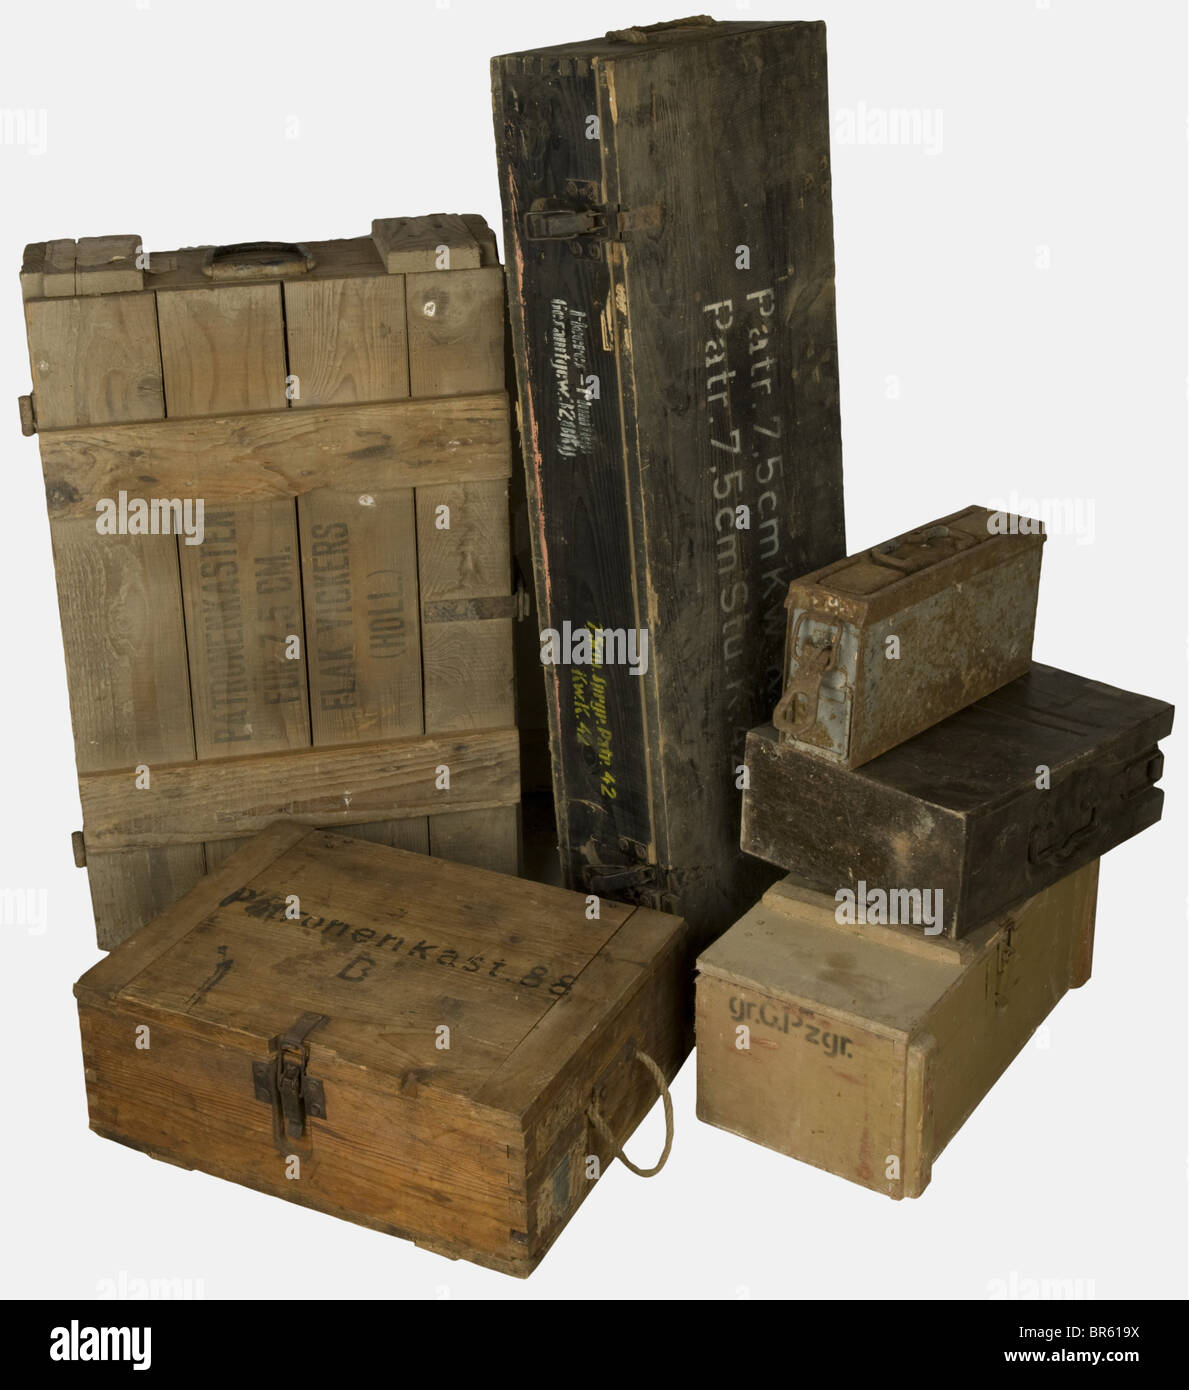 Accessoires, Ensemble de caisses allemandes, comprenant une caisse en bois blanc pour 1500 cartocks caliber 7,92 x 57 type S.m.E. Fabrication 'hw' en 1944 avec belle étiquette marquée 'Für M.G.' en rouge et à la peinture noire sur le couvercle 'Patronenkast.88. B.', un conteneur pour deux chargeurs de canon de Flak de 2 cm peint feldgrau, une caissette en tôle d'acier pour une bande de mitrailleuse M.G. 34/42 (abîmée et oxydée), une caisse en bois feldgrau pour deux obus explosifs encartouchés de caliber 7,5cm fabbricazione 1943 marquée au potoir blanc 'Parr., Foto Stock